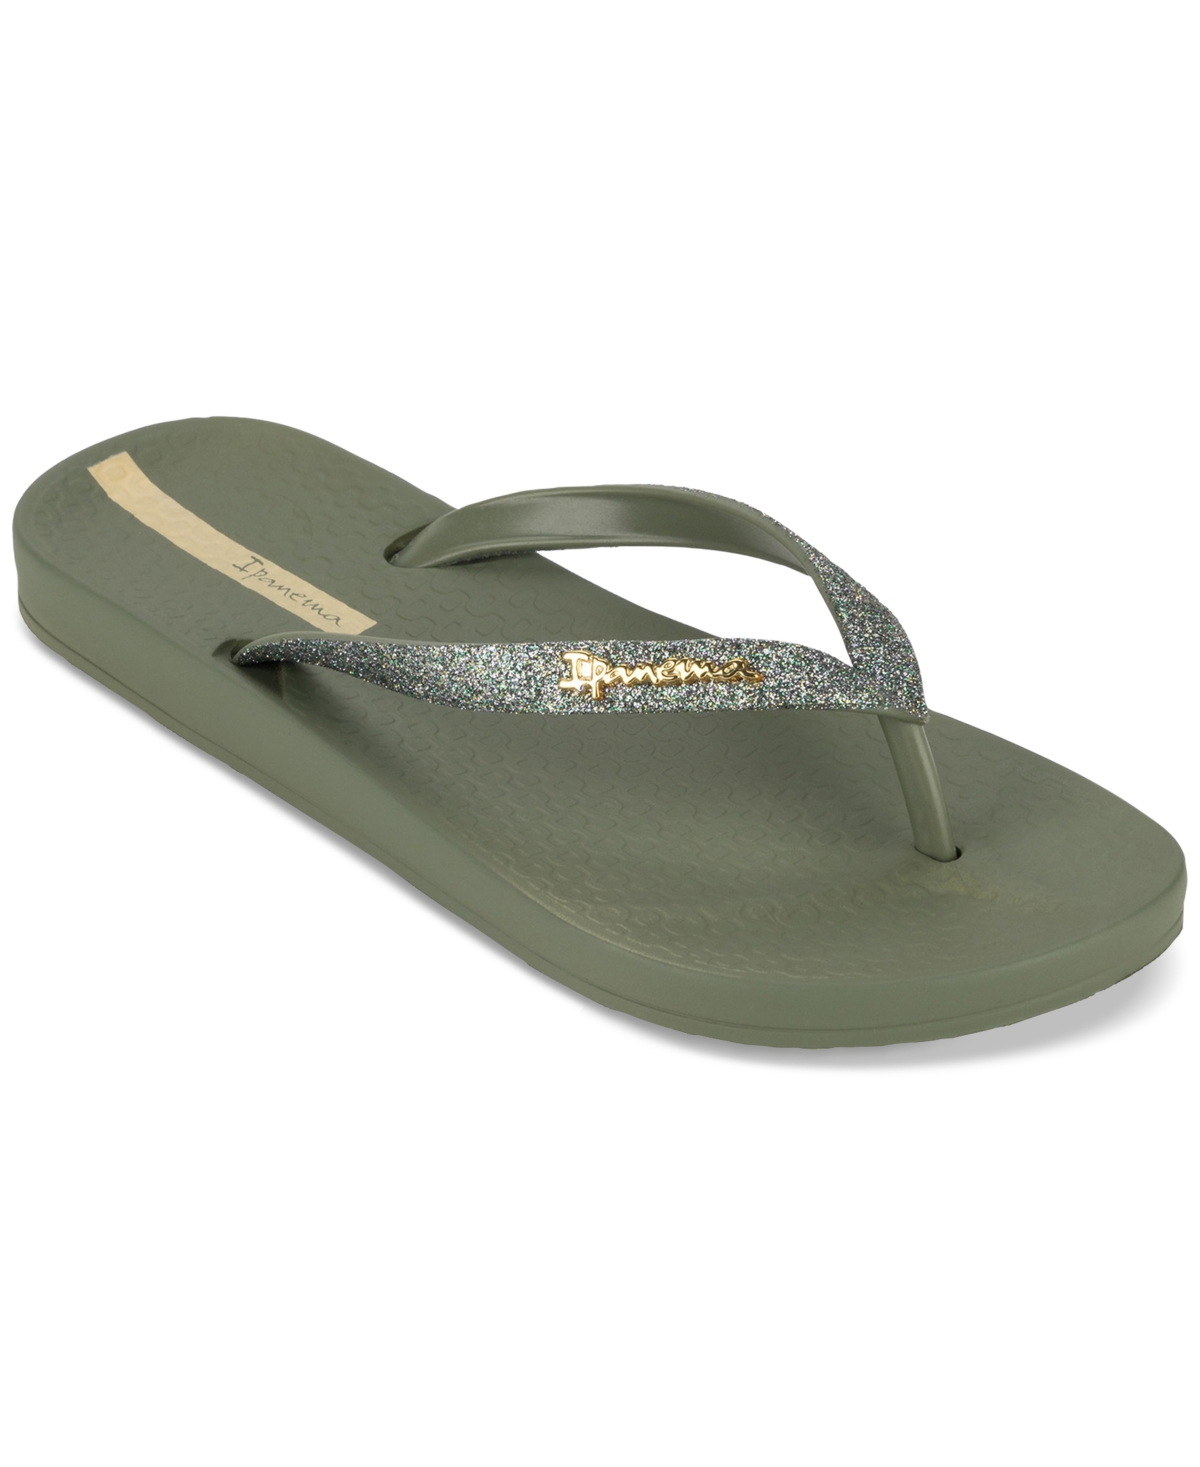 Women's Ana Sparkle Flip-flop Sandals - Beige, Beige